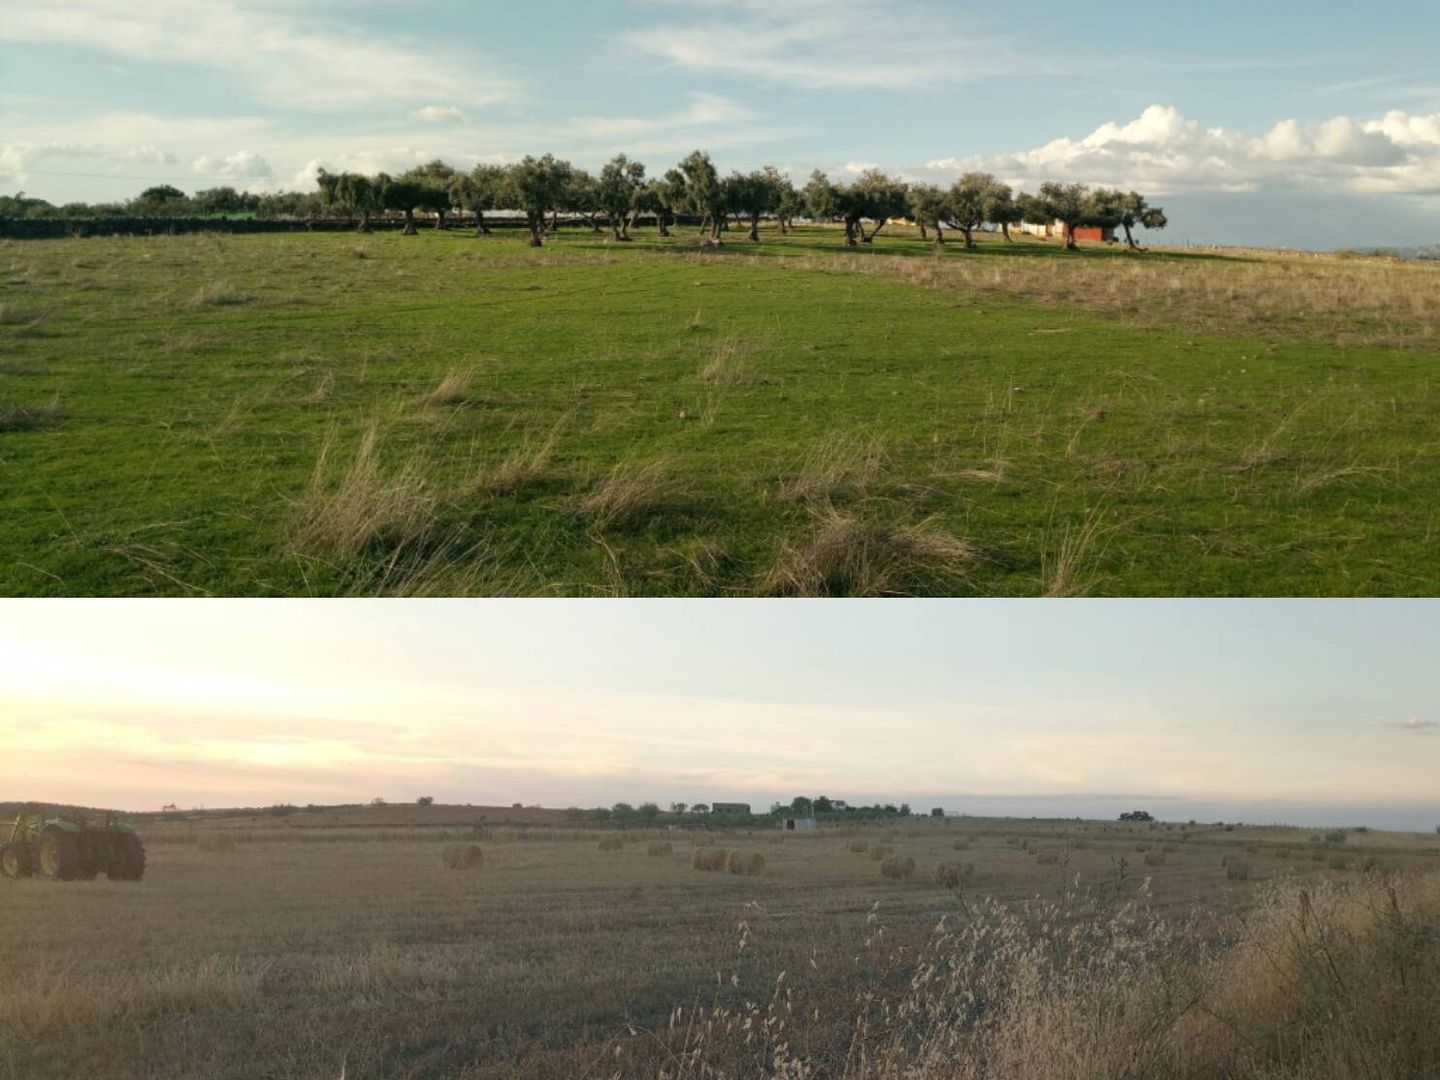 Dos fotos de paisajes en una sola publicación